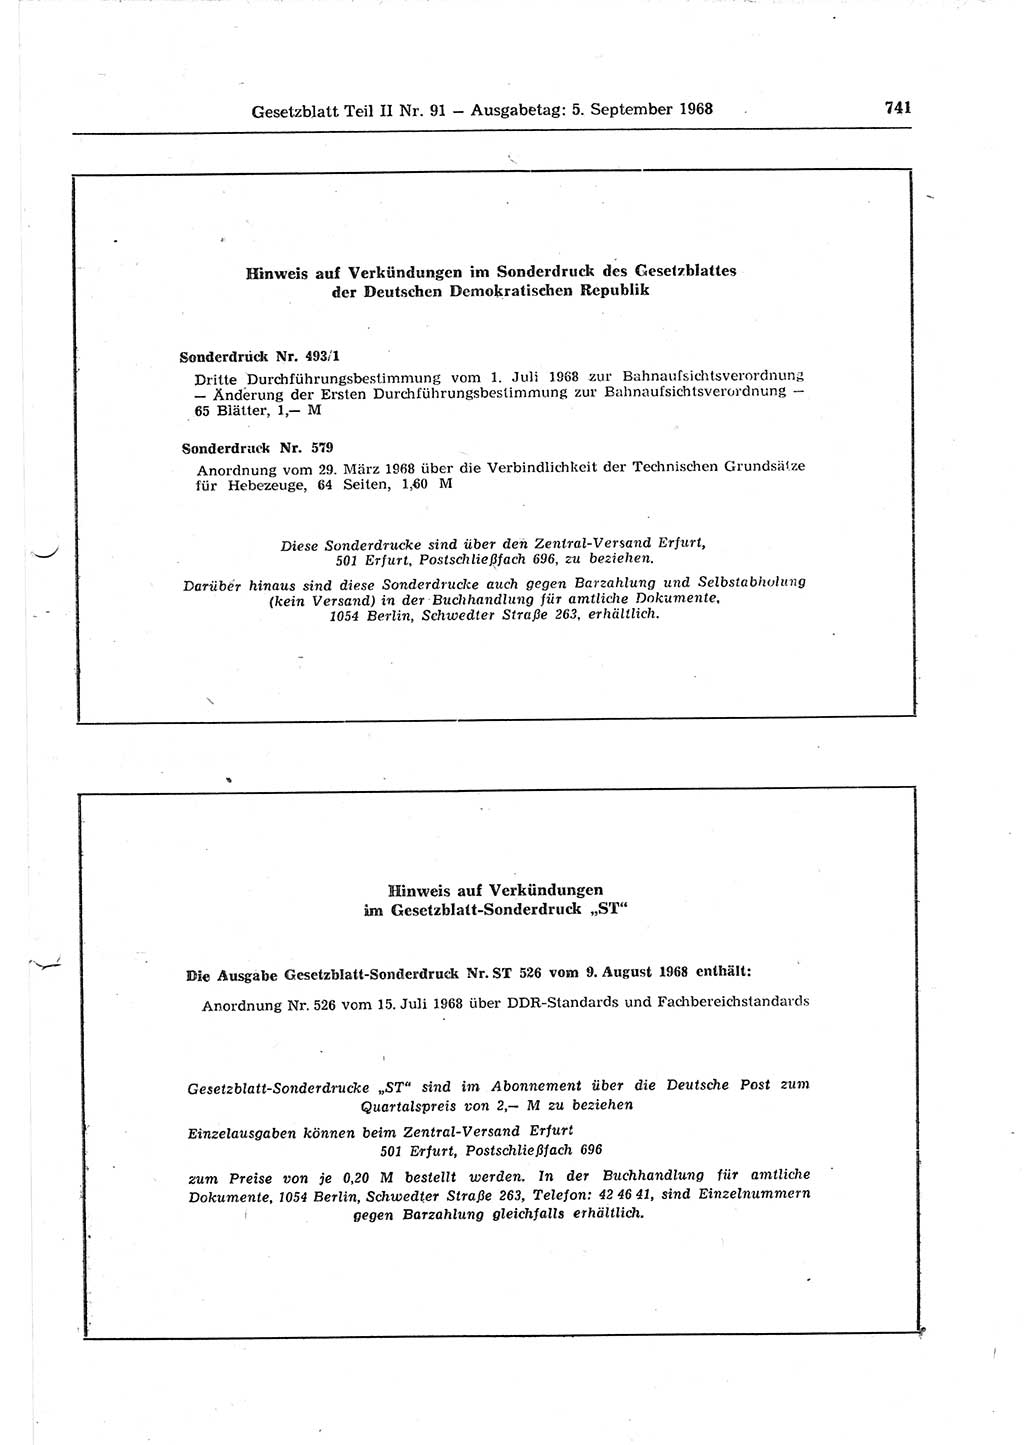 Gesetzblatt (GBl.) der Deutschen Demokratischen Republik (DDR) Teil ⅠⅠ 1968, Seite 741 (GBl. DDR ⅠⅠ 1968, S. 741)